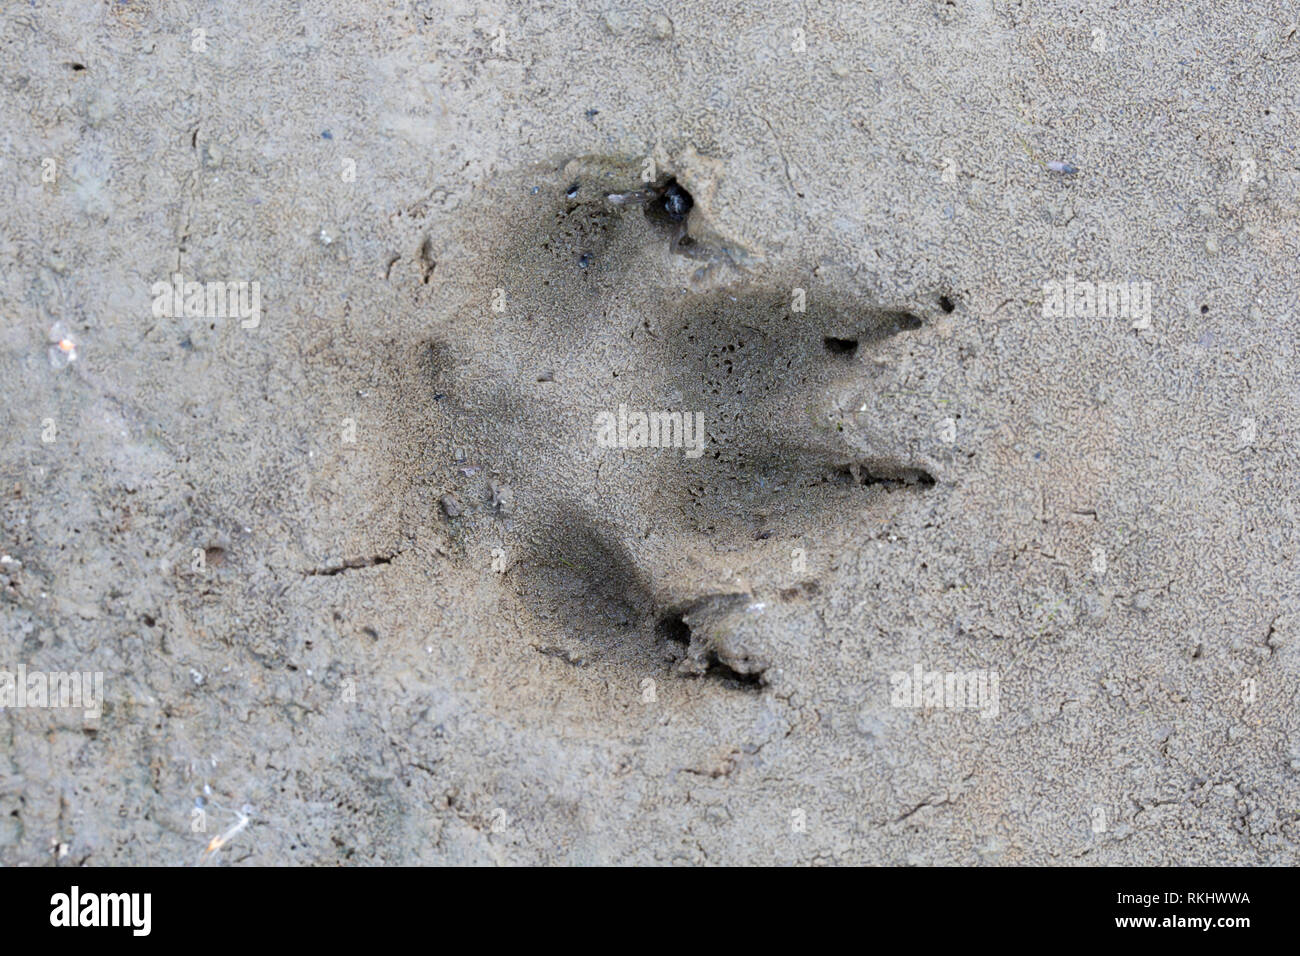 Le renard roux (Vulpes vulpes) gros plan de l'encombrement dans le sable humide / boue Banque D'Images